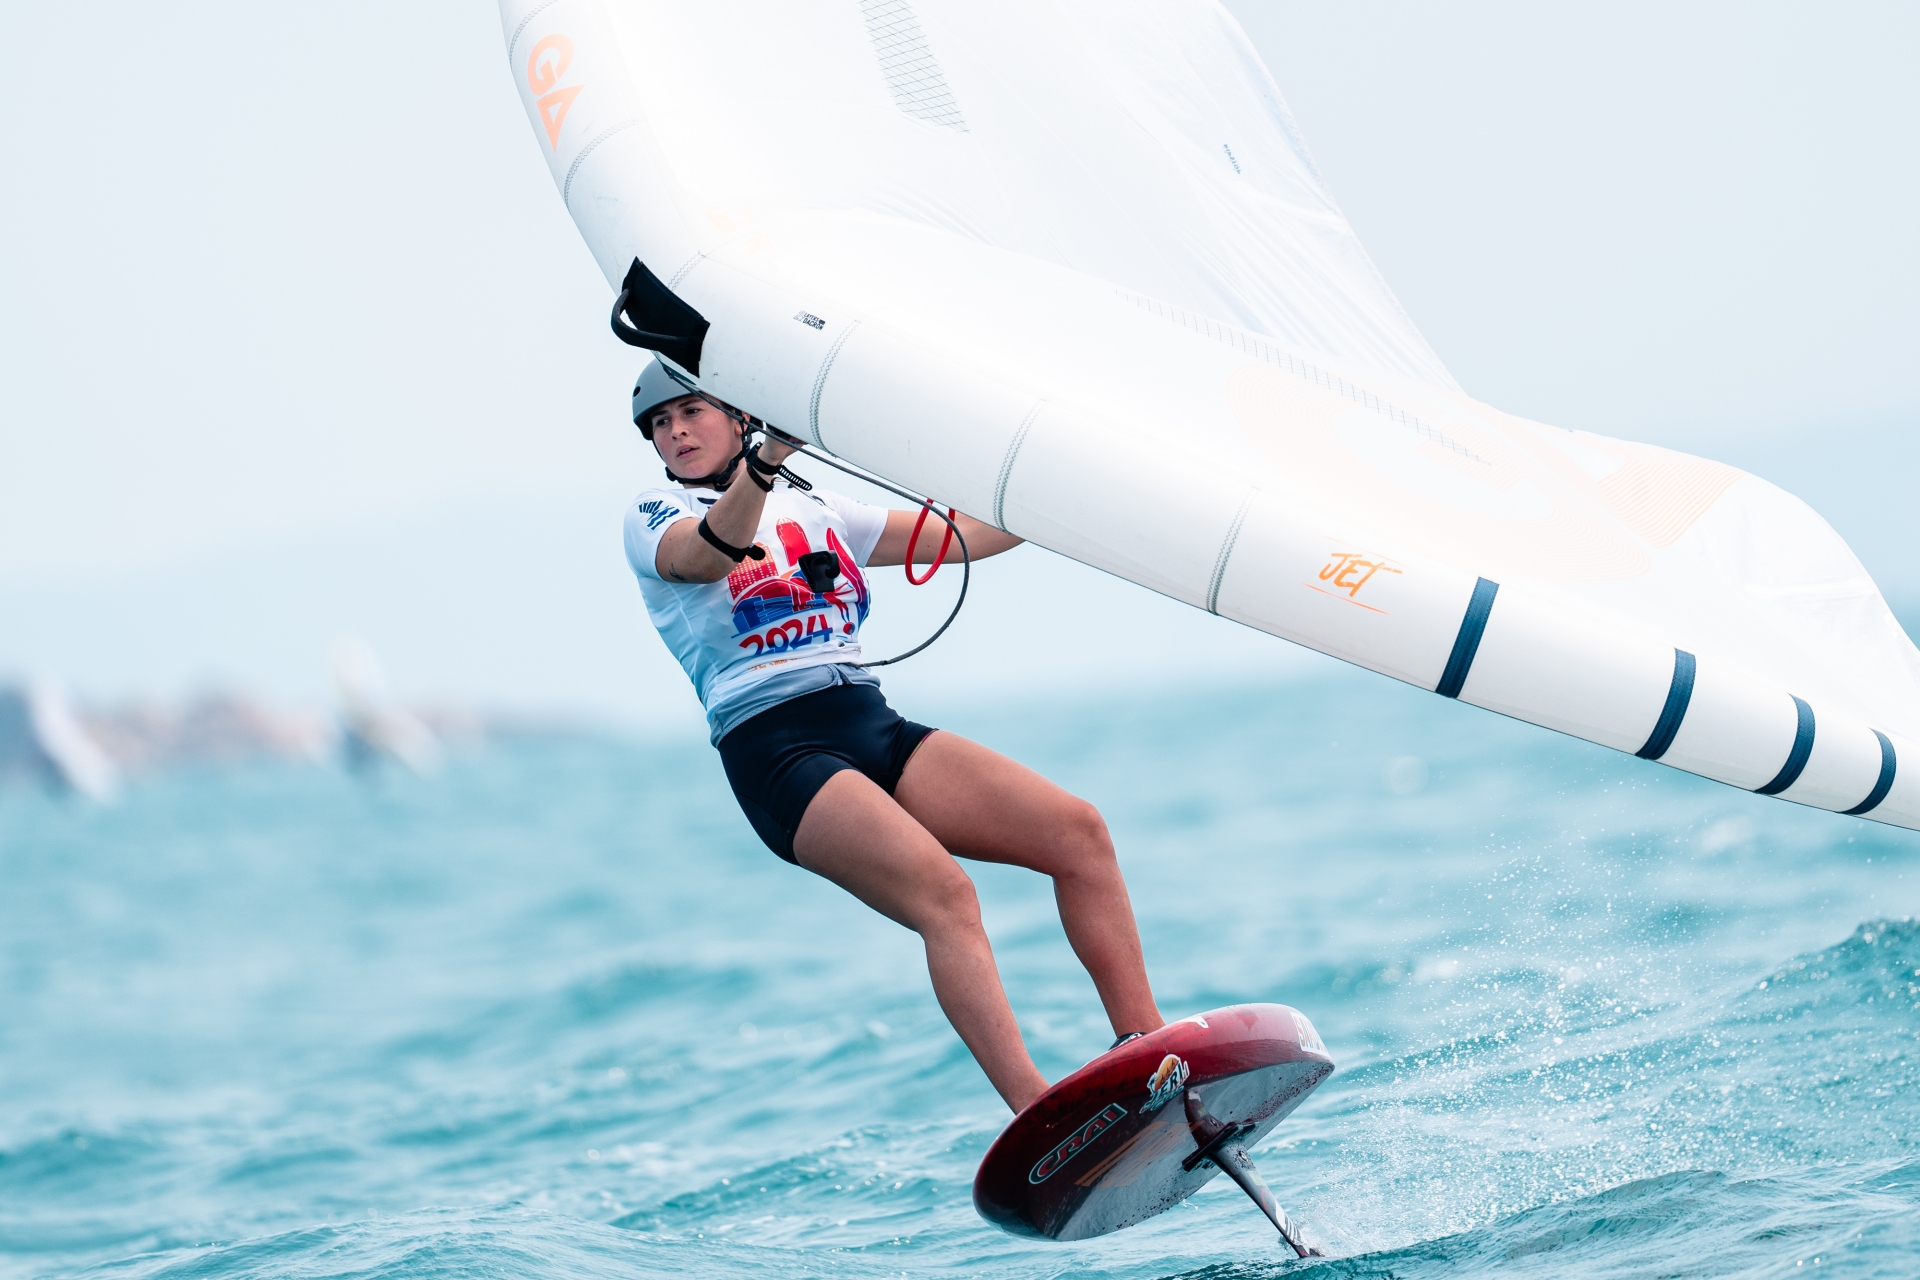 Maddalena Spanu vince l’Asian Championship e Federico Pilloni la seconda tappa di Coppa Italia iQFOiL Youth - NEWS - Yacht Club Costa Smeralda